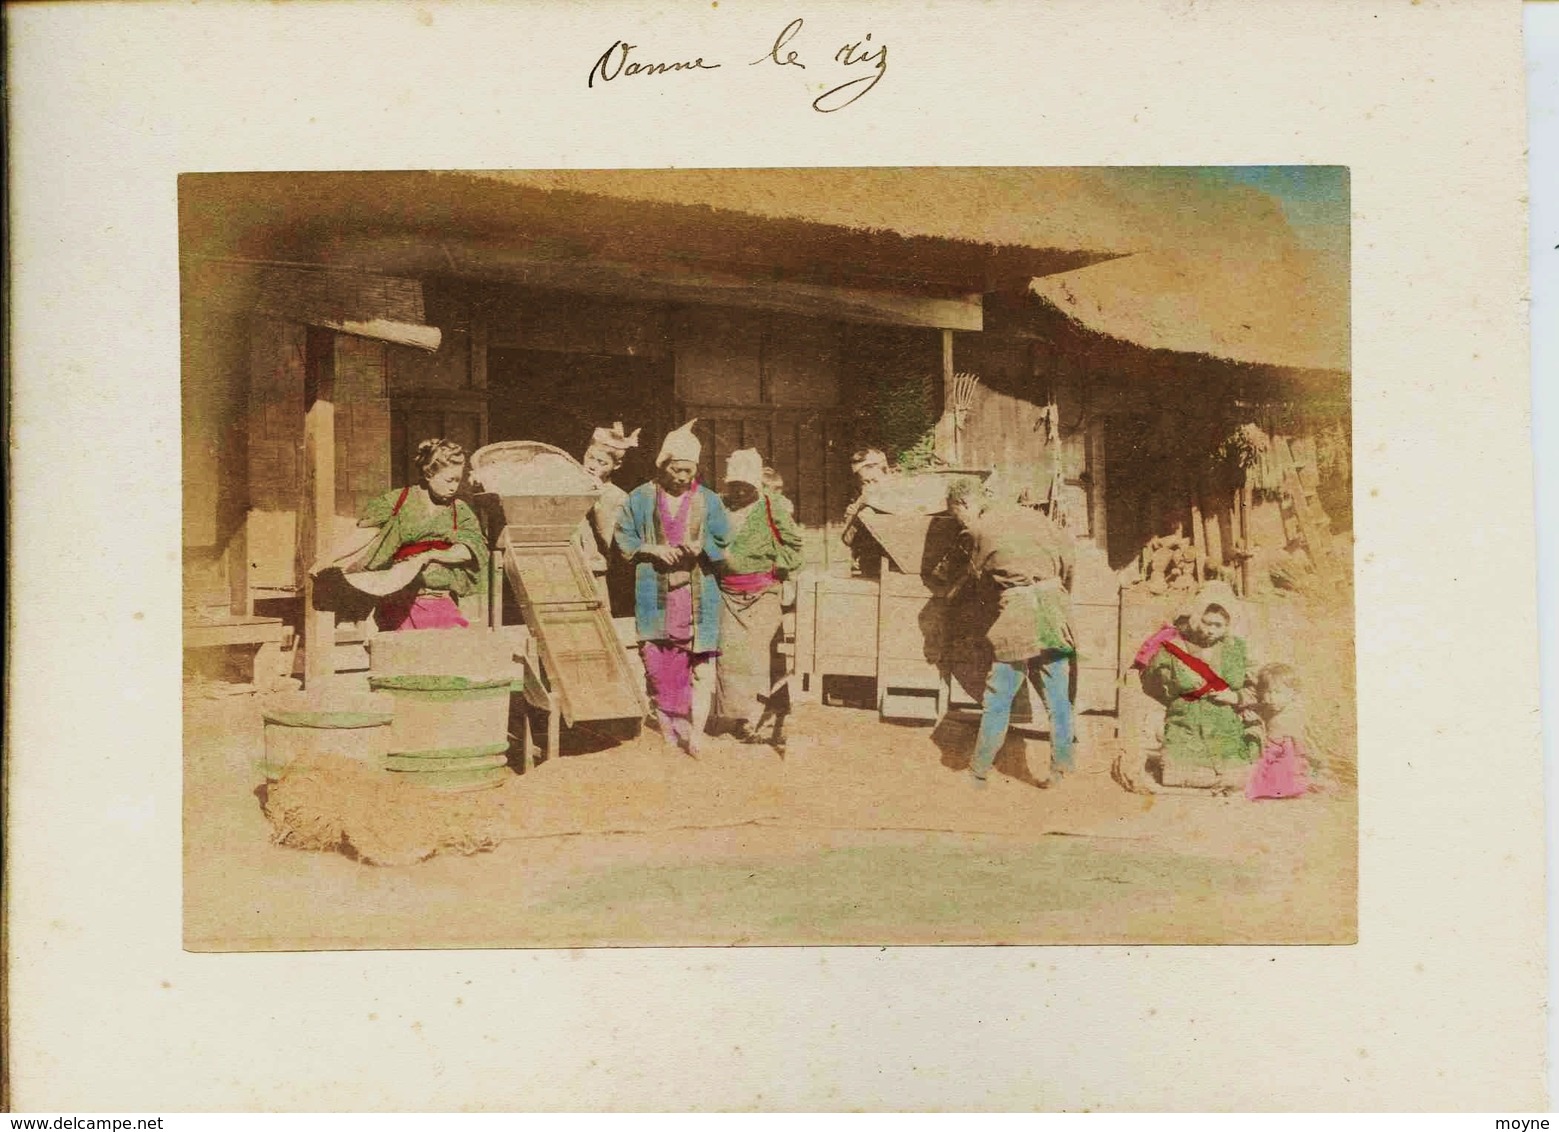 24 -  2 Photos Du Japon 19e - METIER  1) VANNAGE DU RIZ  2)  IMAICHI  NIKKO - Sur Papier Albuminé Et Aquarellé - - Anciennes (Av. 1900)